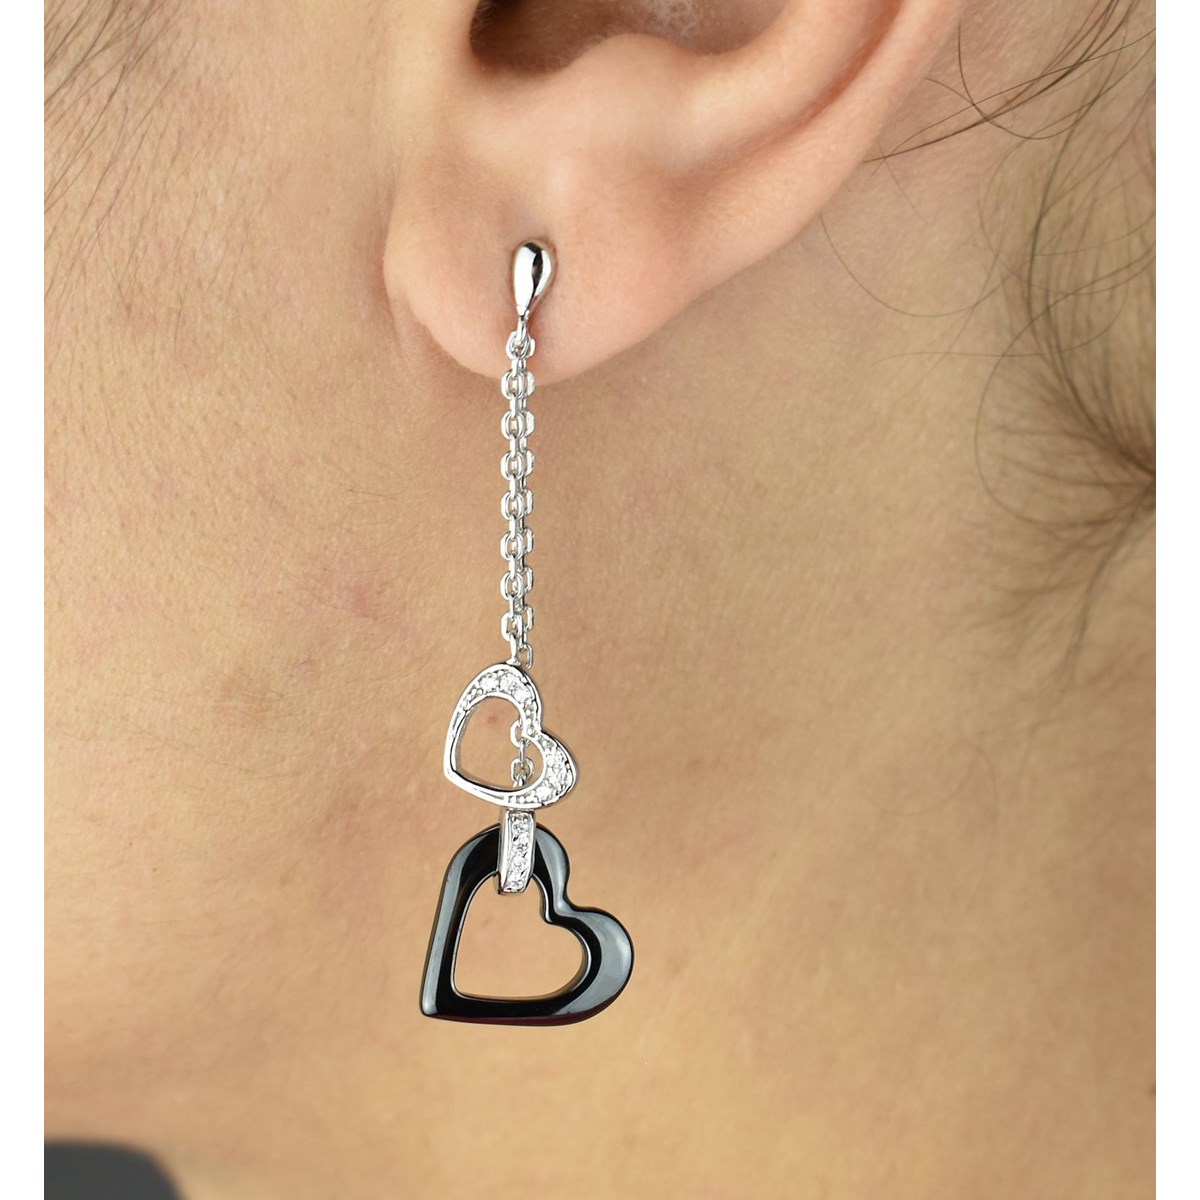 Boucles d'oreilles 2 coeurs oxyde de zirconium et céramique noire Argent 925 Rhodié - vue 2